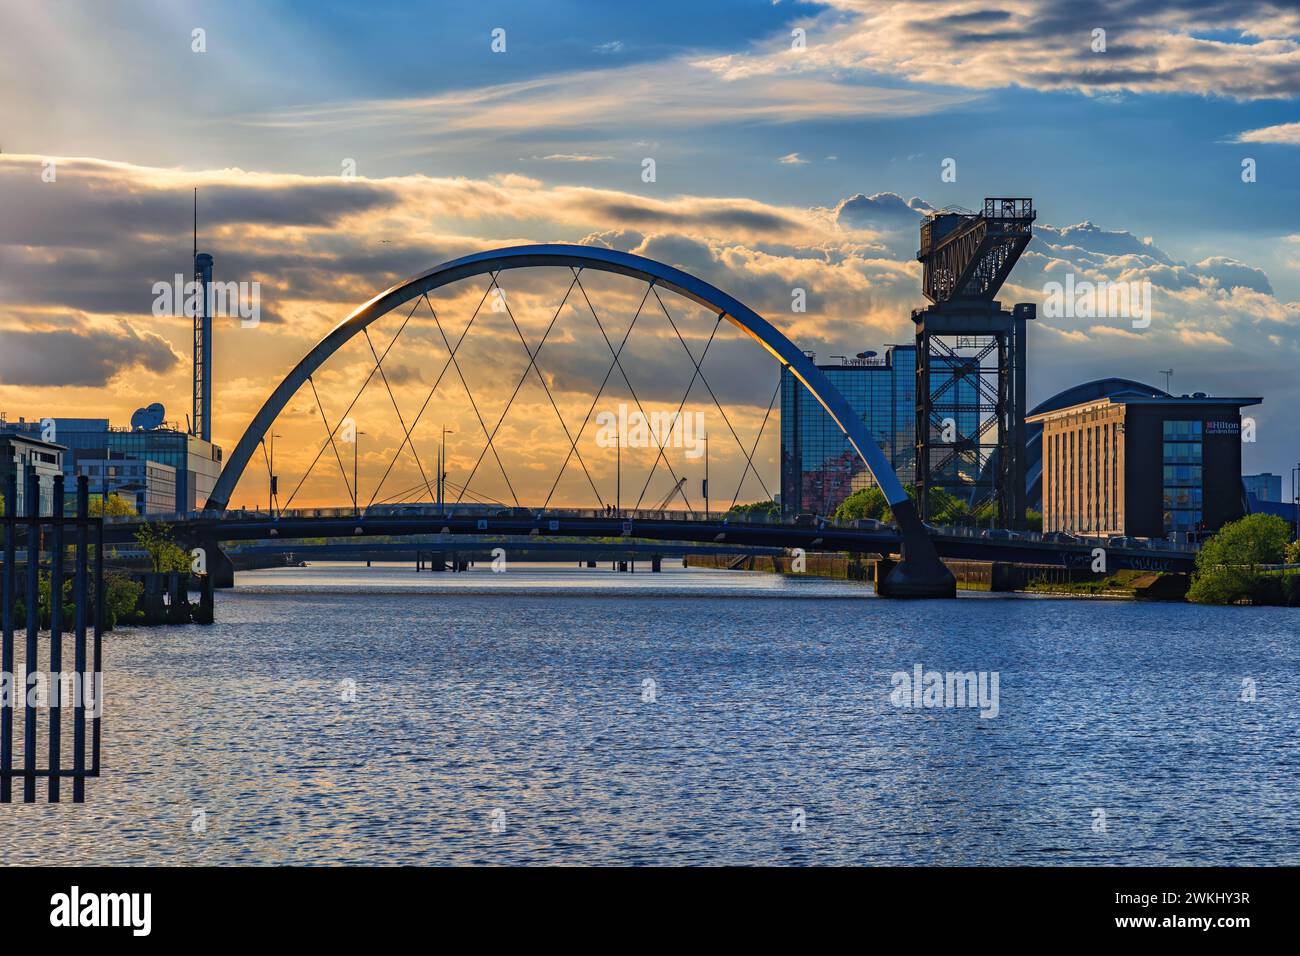 Tramonto al Clyde Arc Bridge e Finnieston Crane al River Clyde nella città di Glasgow in Scozia, Regno Unito. Foto Stock